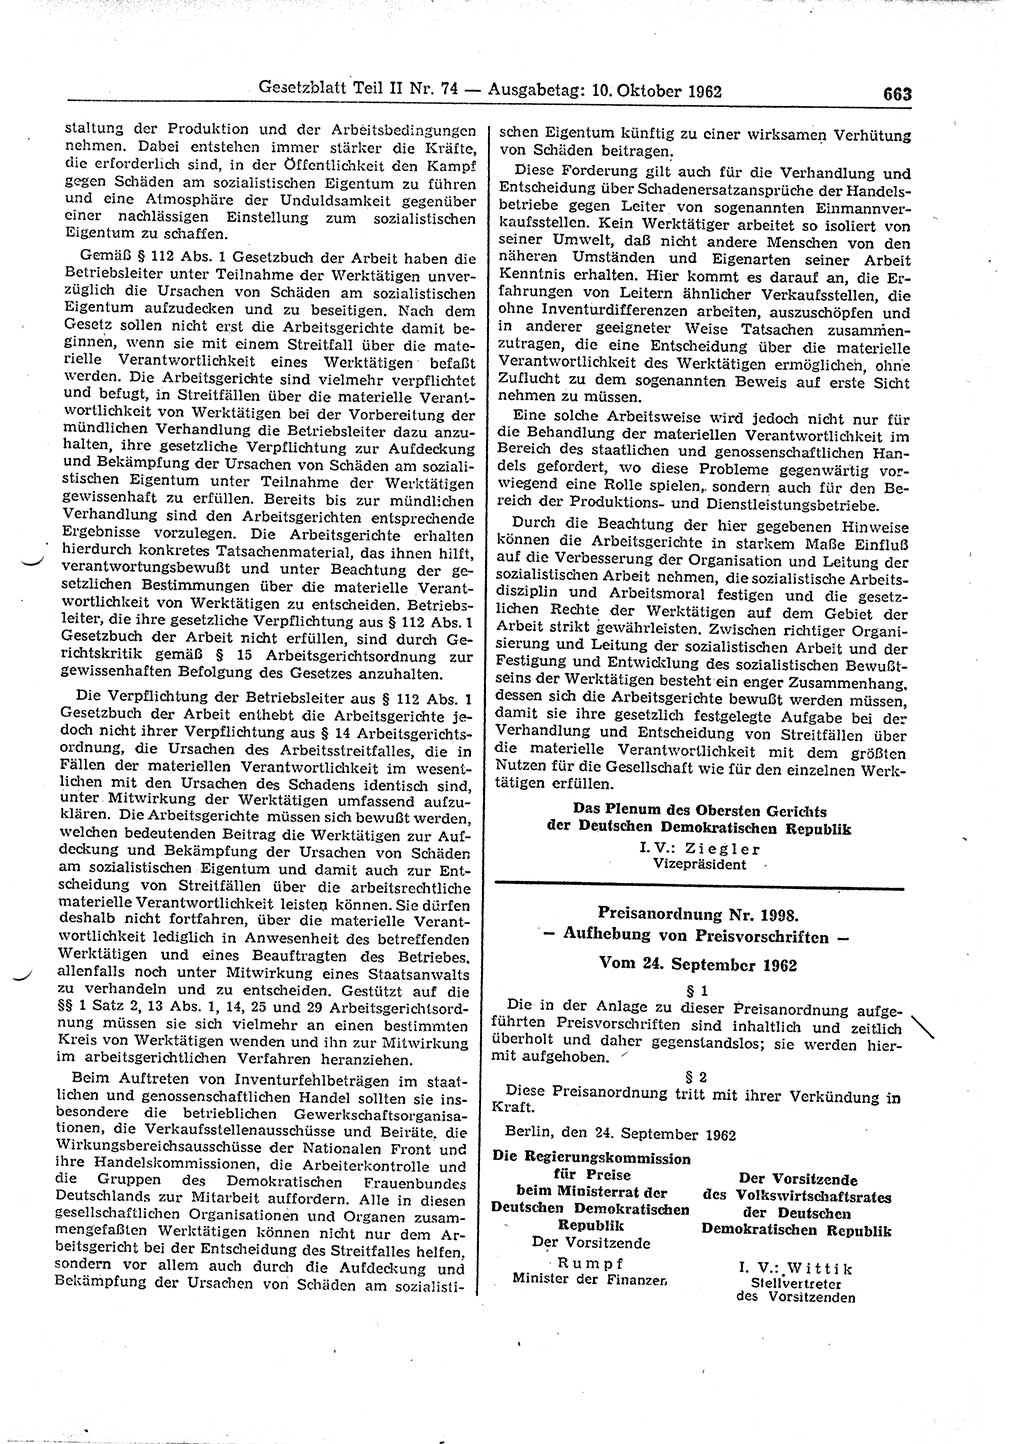 Gesetzblatt (GBl.) der Deutschen Demokratischen Republik (DDR) Teil ⅠⅠ 1962, Seite 663 (GBl. DDR ⅠⅠ 1962, S. 663)